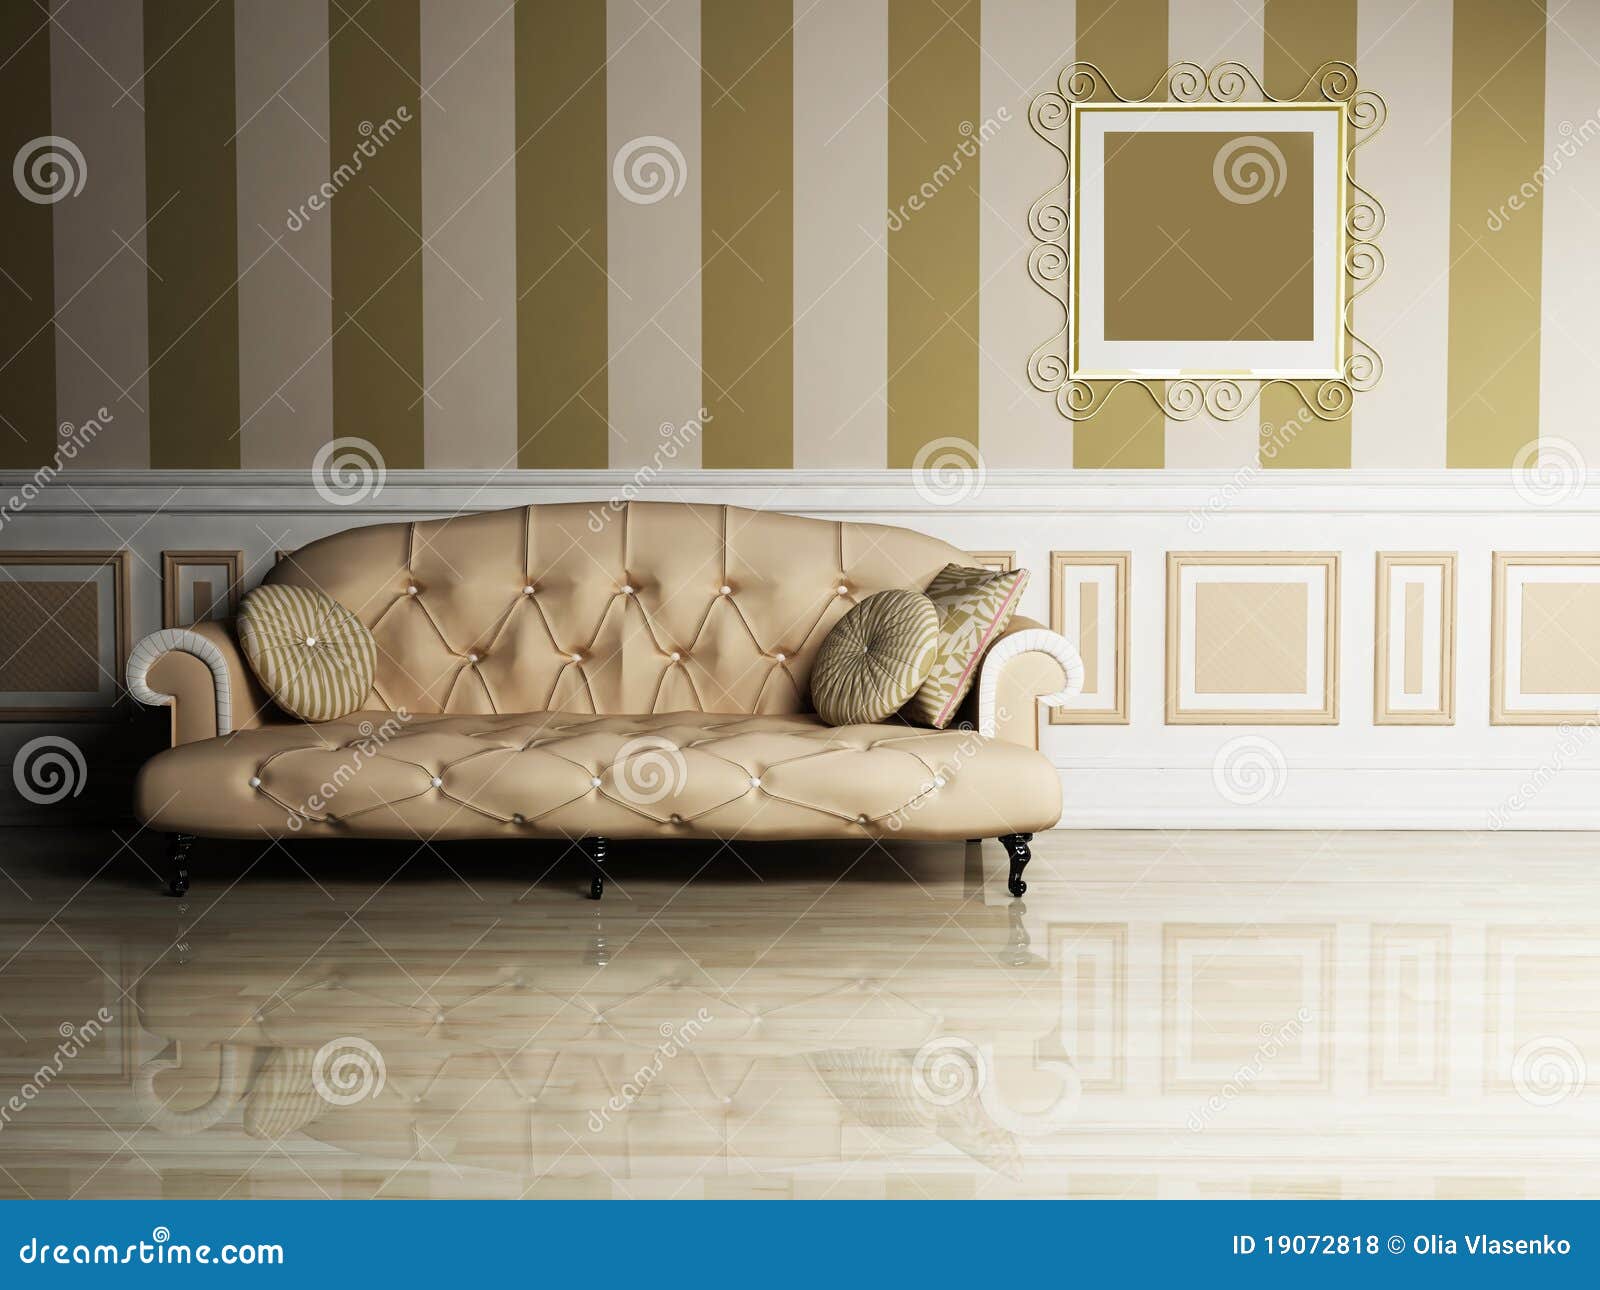 Classic Sofa Designs